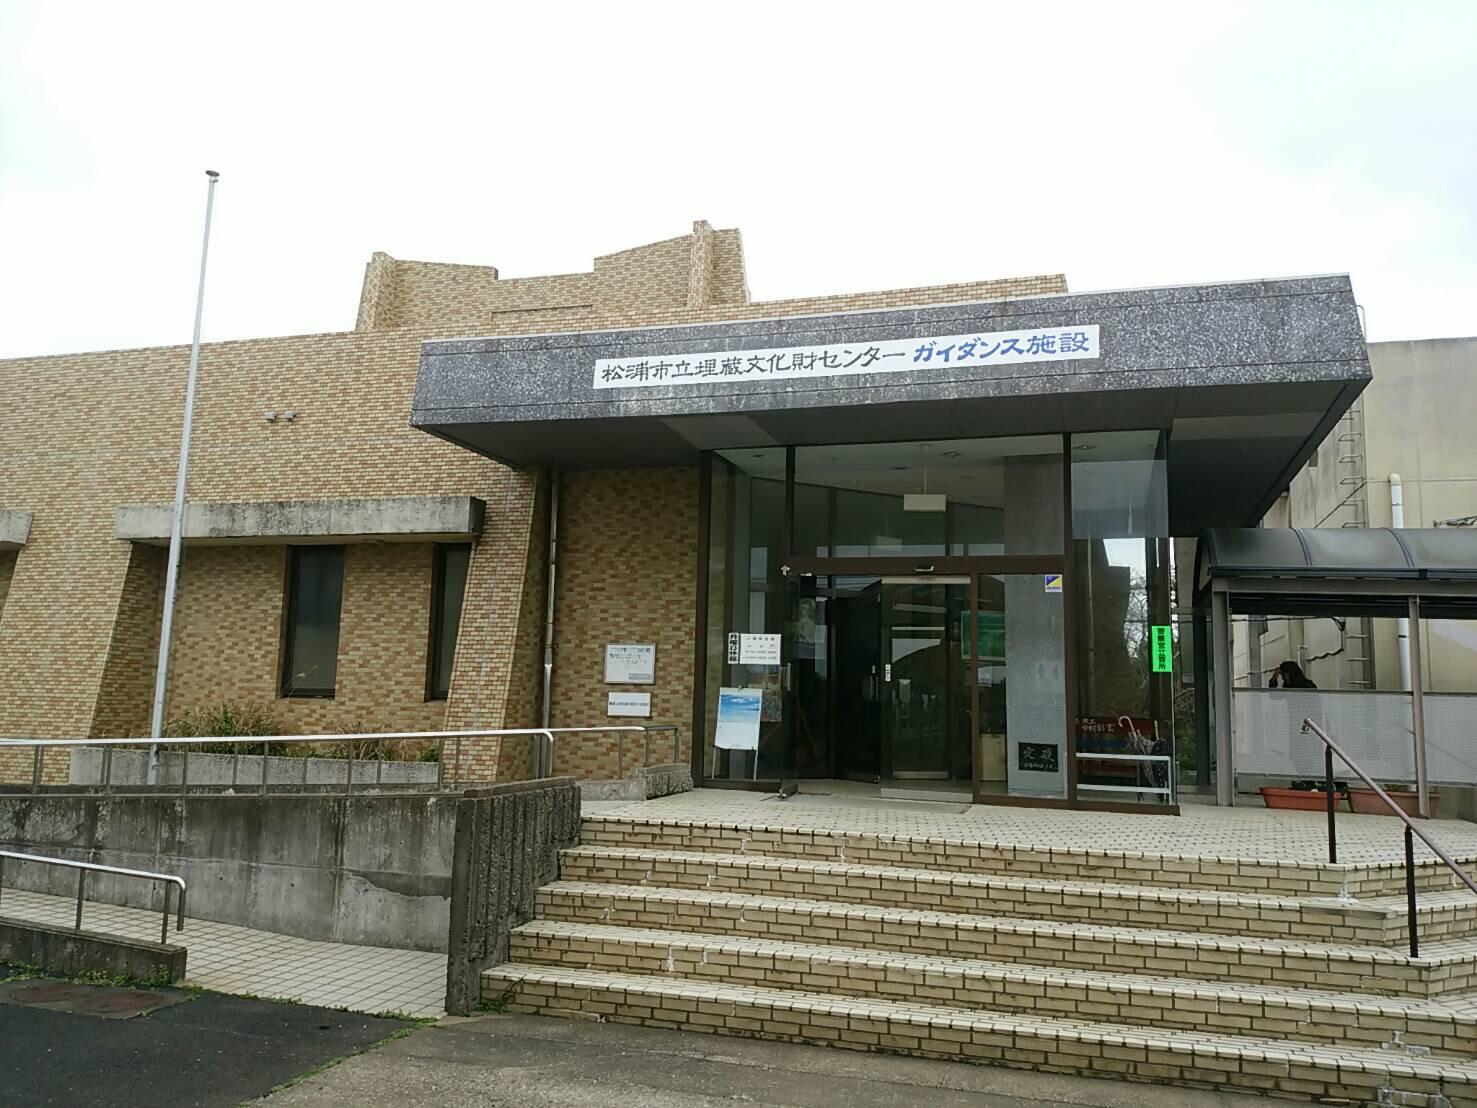 松浦市立埋蔵文化財センターガイダンス施設の外観画像